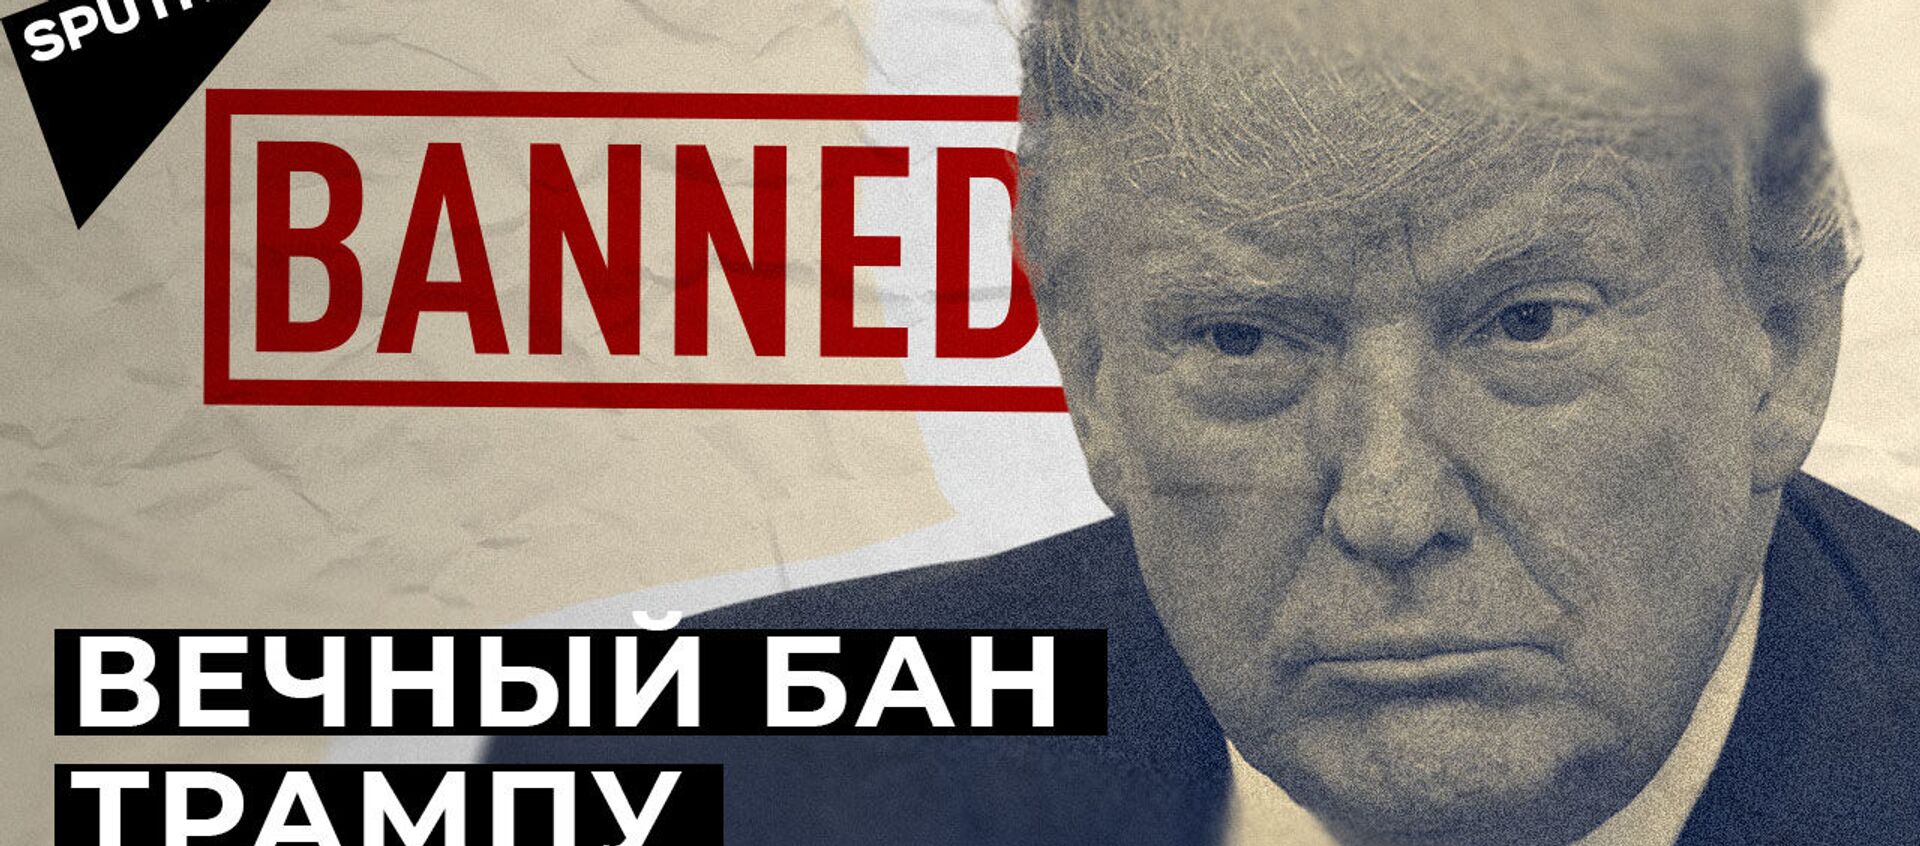 Впервые в истории: Трампу вынесли импичмент во второй раз - Sputnik Узбекистан, 1920, 15.01.2021